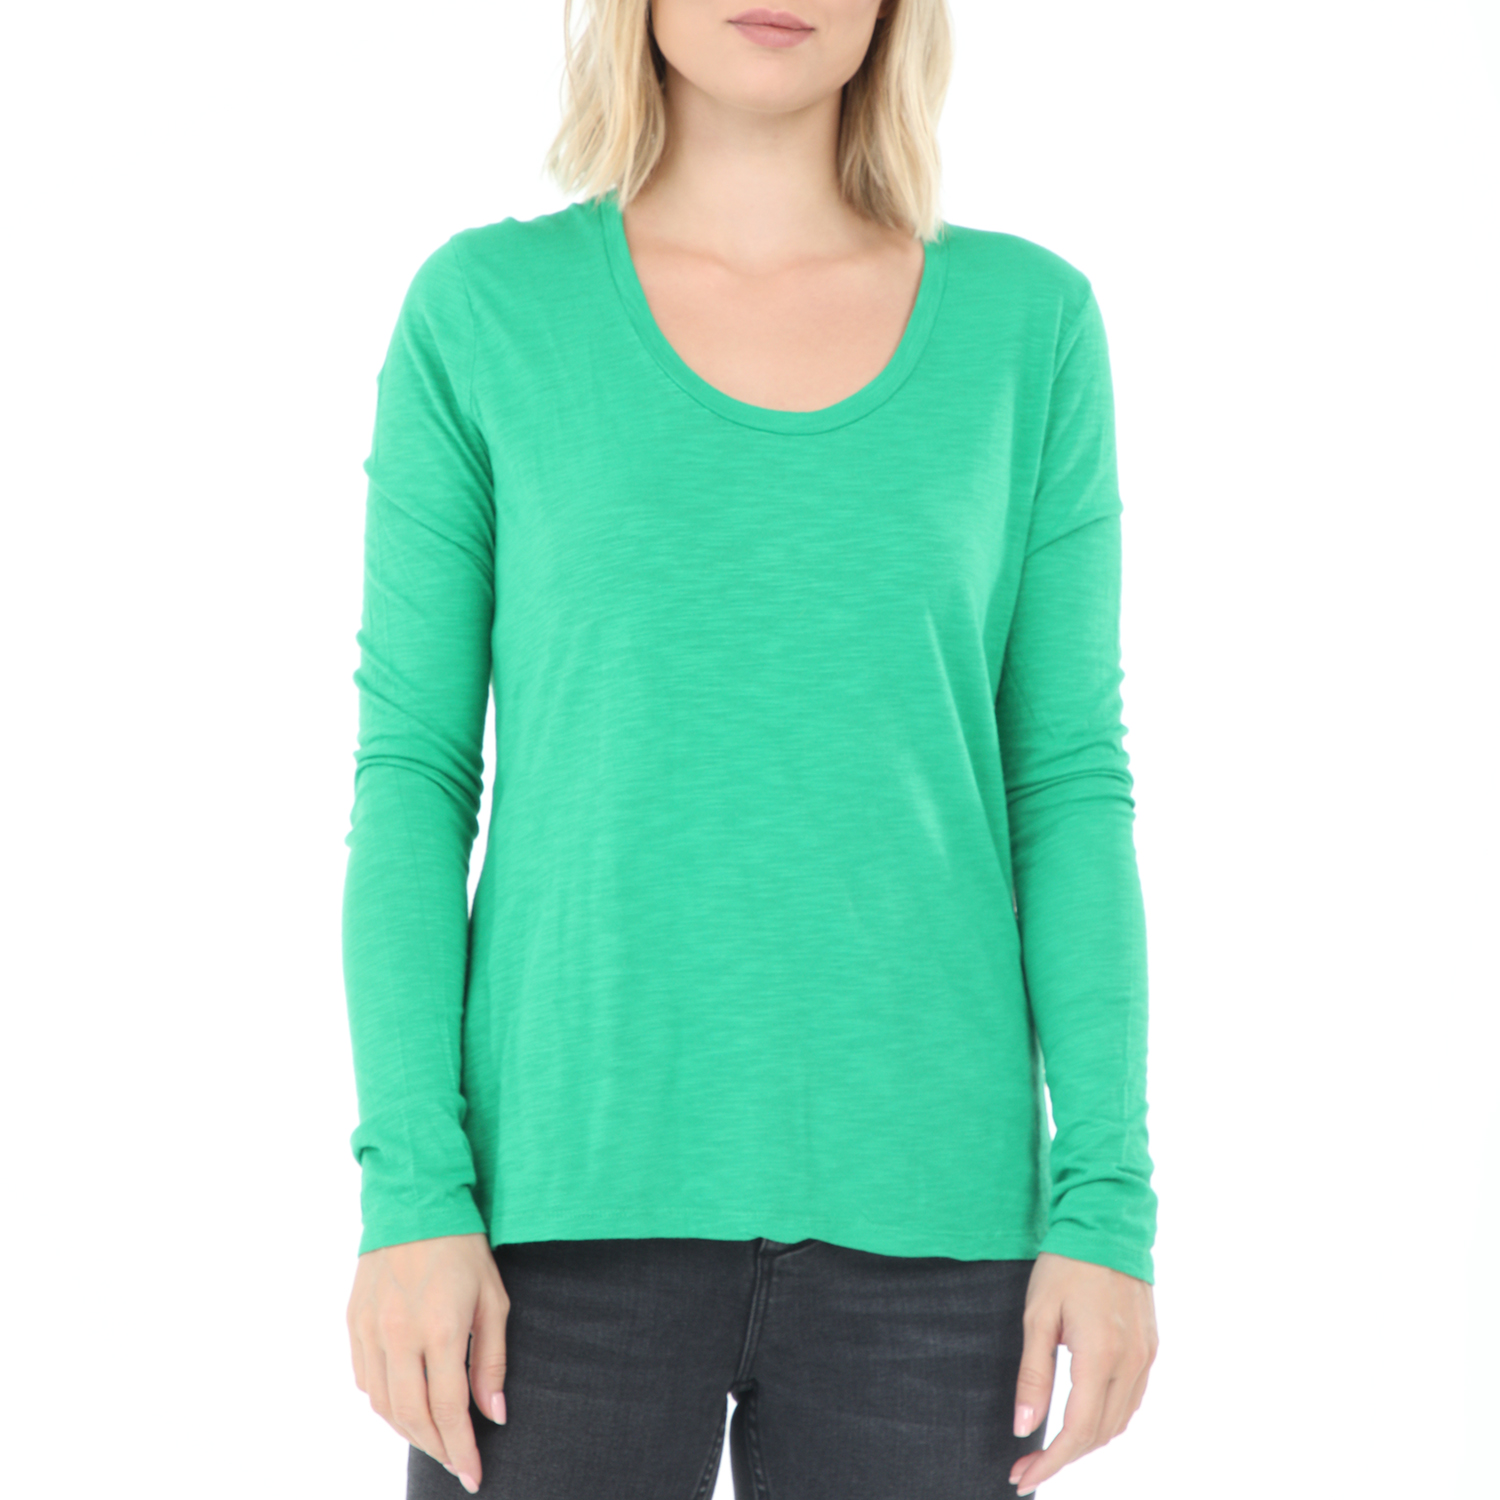 Γυναικεία/Ρούχα/Μπλούζες/Μακρυμάνικες AMERICAN VINTAGE - Γυναικεία μπλούζα AMERICAN VINTAGE πράσινη